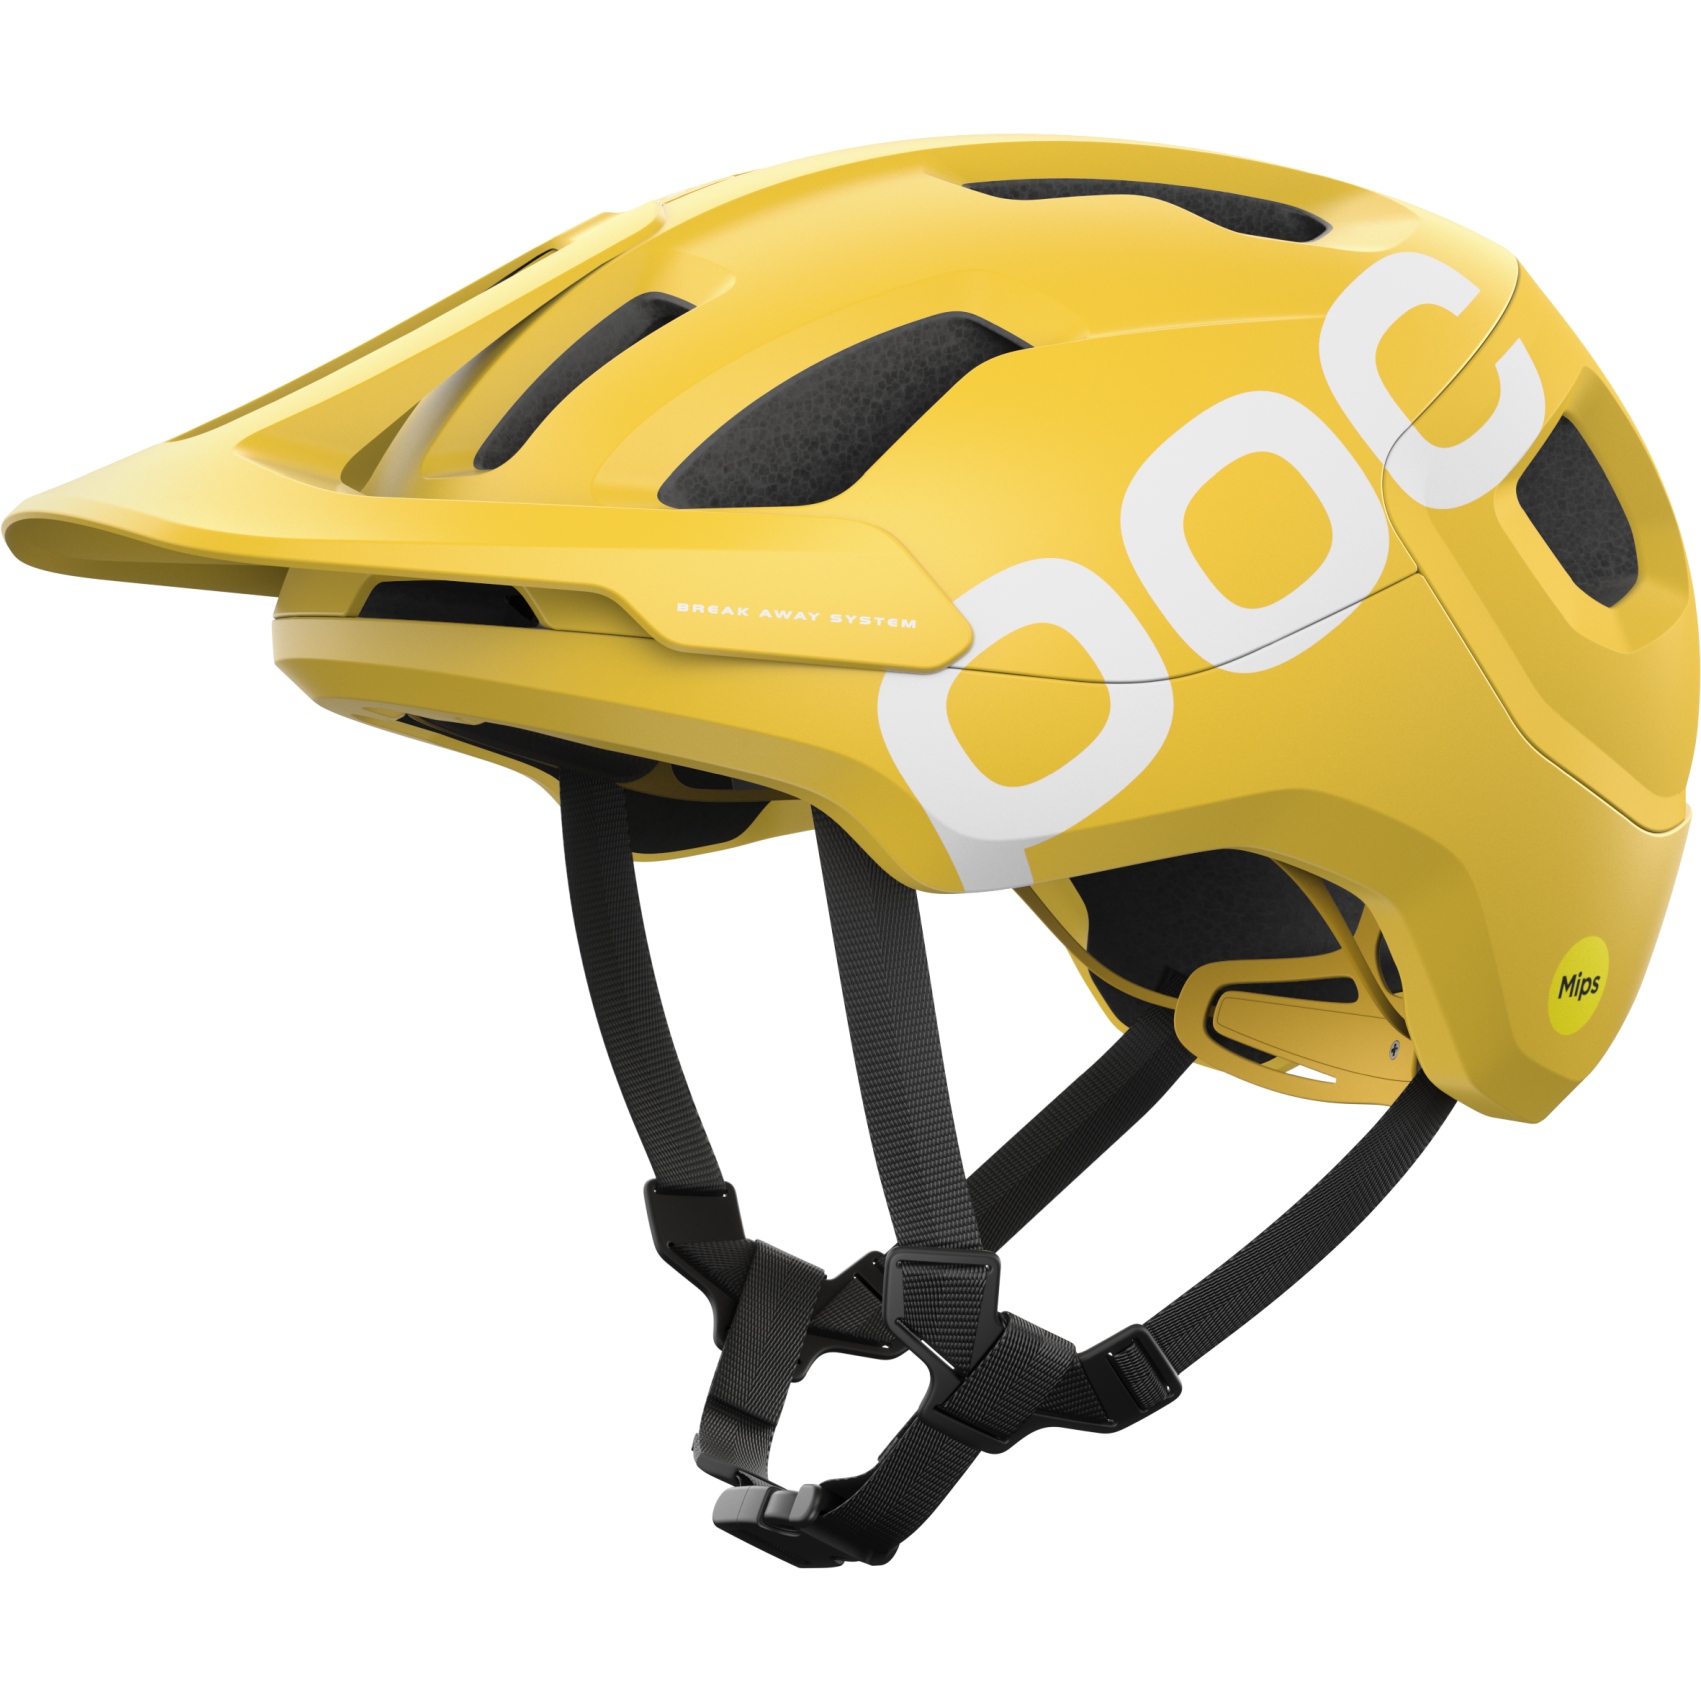 Produktbild von POC Axion Race MIPS Helm - 1331 Aventurine Yellow Matt